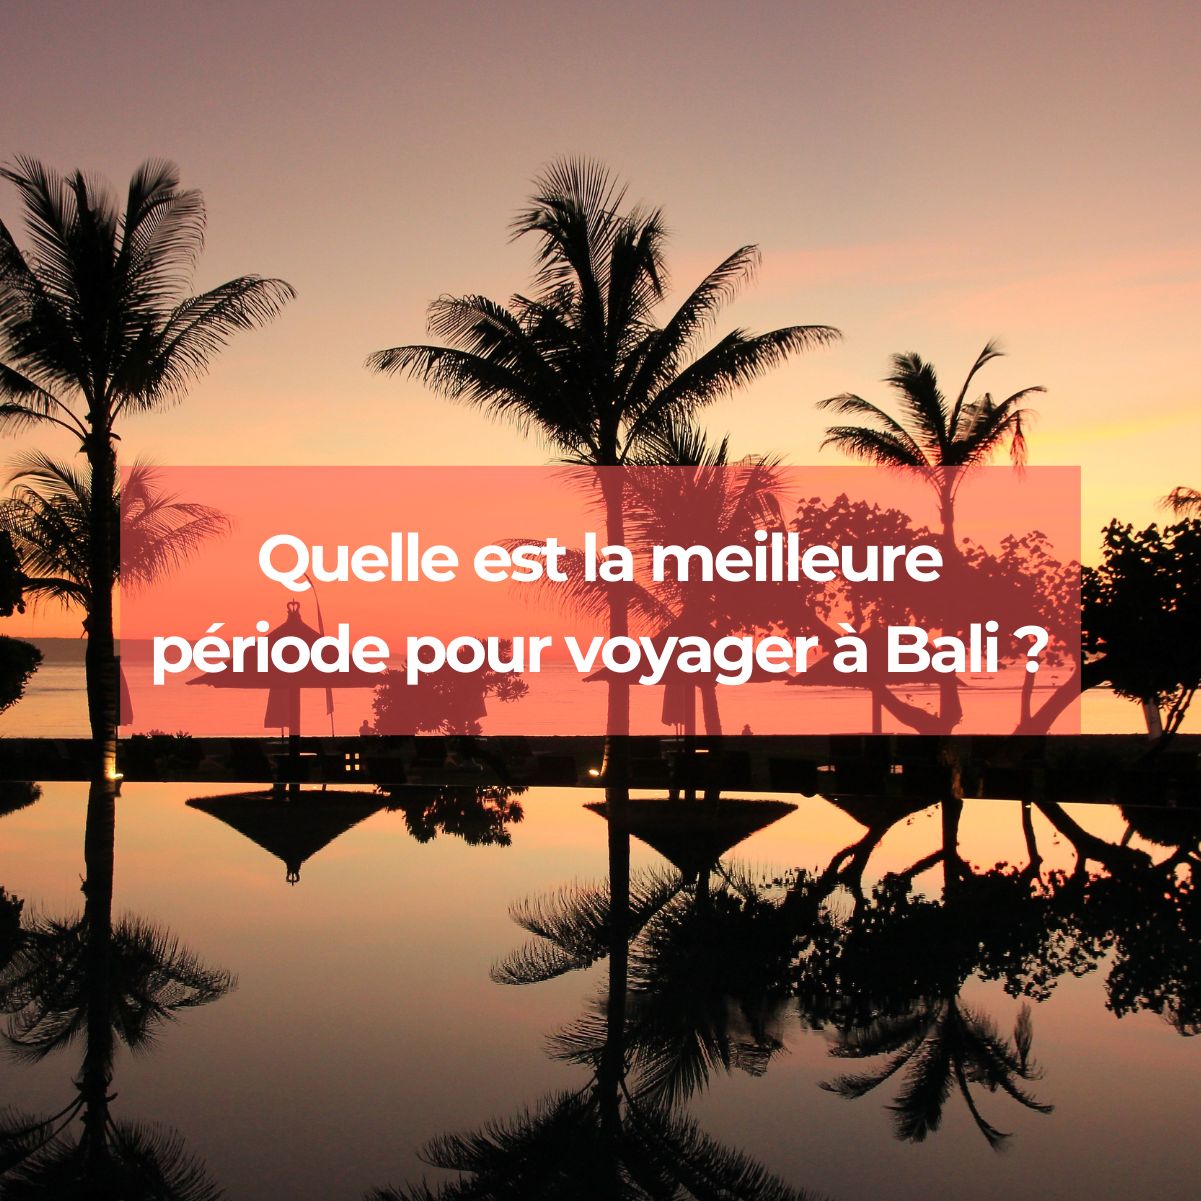 Quelle est la meilleure période pour voyager à Bali ?